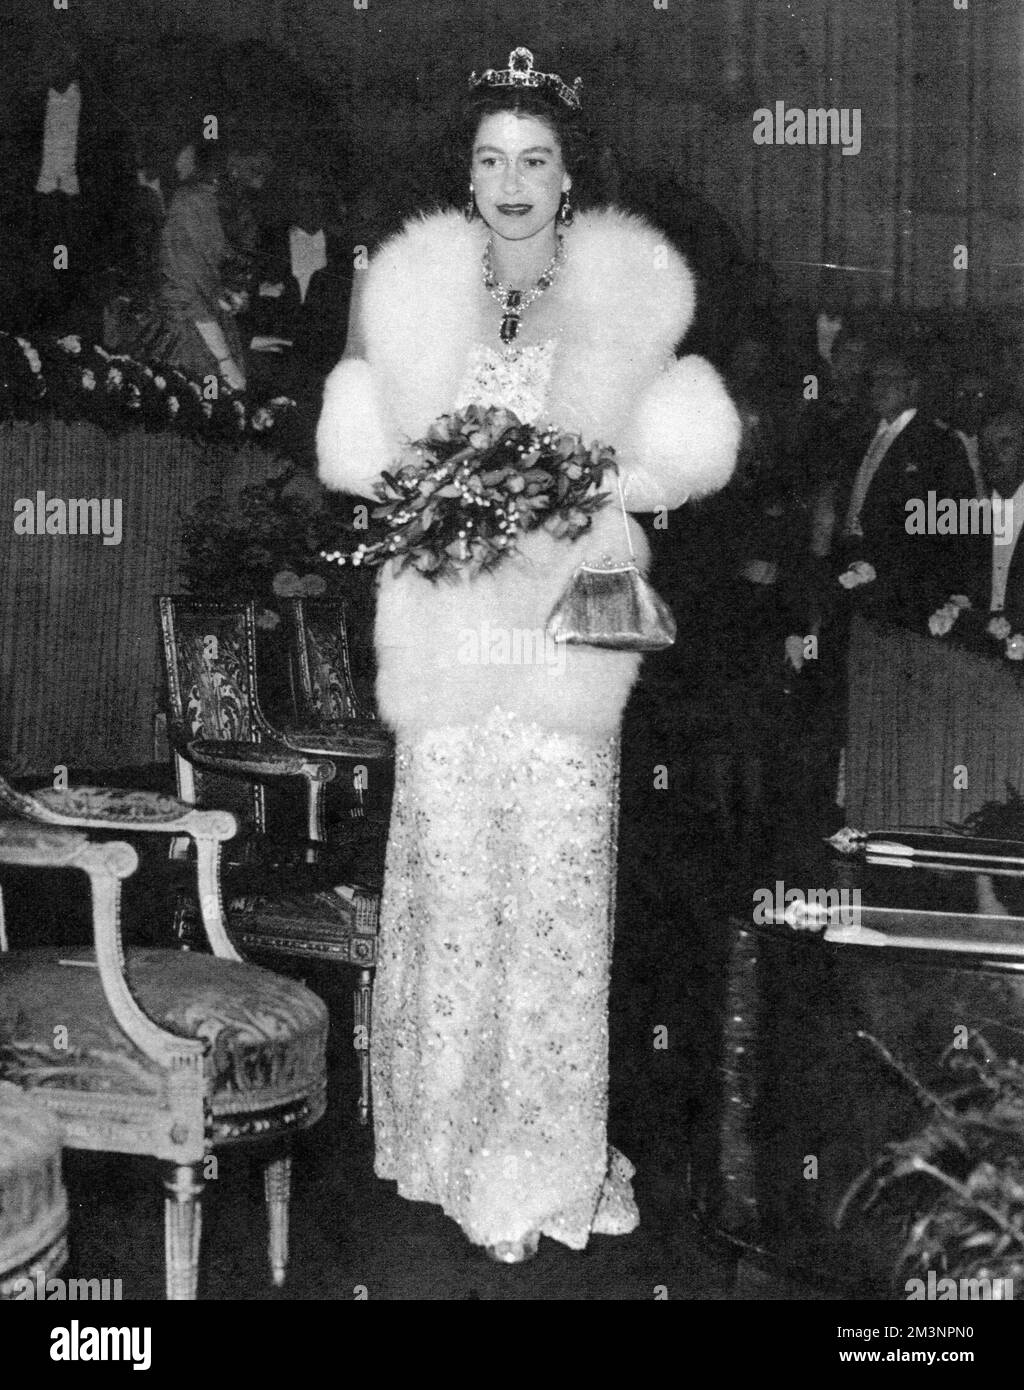 Königin Elizabeth II. Sieht opulent aus in einem perlenbesetzten Abendkleid und Pelzmantel. Die Veranstaltung war die Royal Film Performance im Odeon Theatre am Leicester Square, London. Datum: 1957 Stockfoto